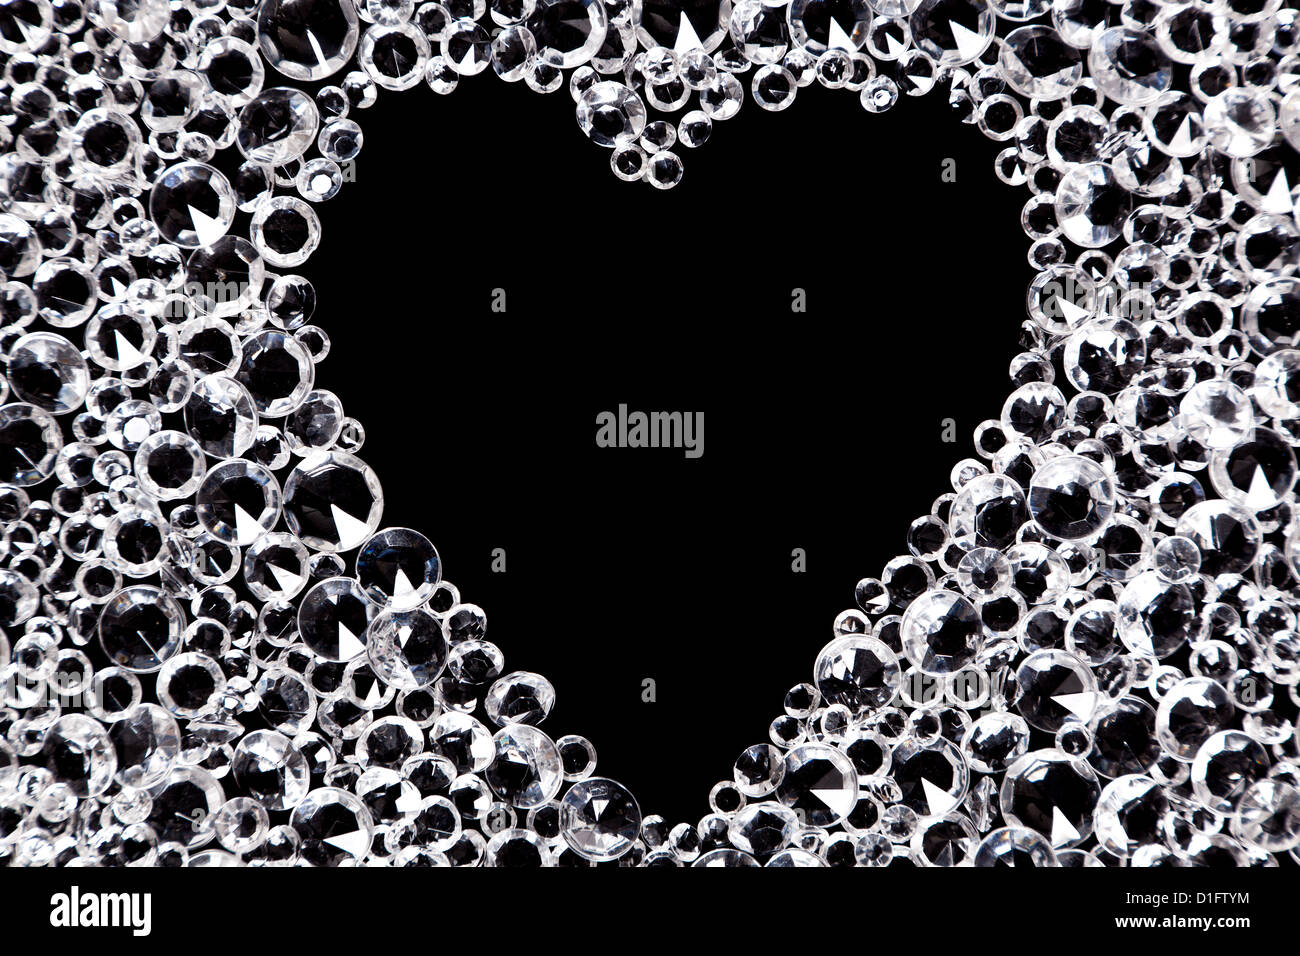 Hunderte von Nachahmung Diamanten auf einem schwarzen Hintergrund mit einem herzförmigen Raum in der Mitte. Stockfoto